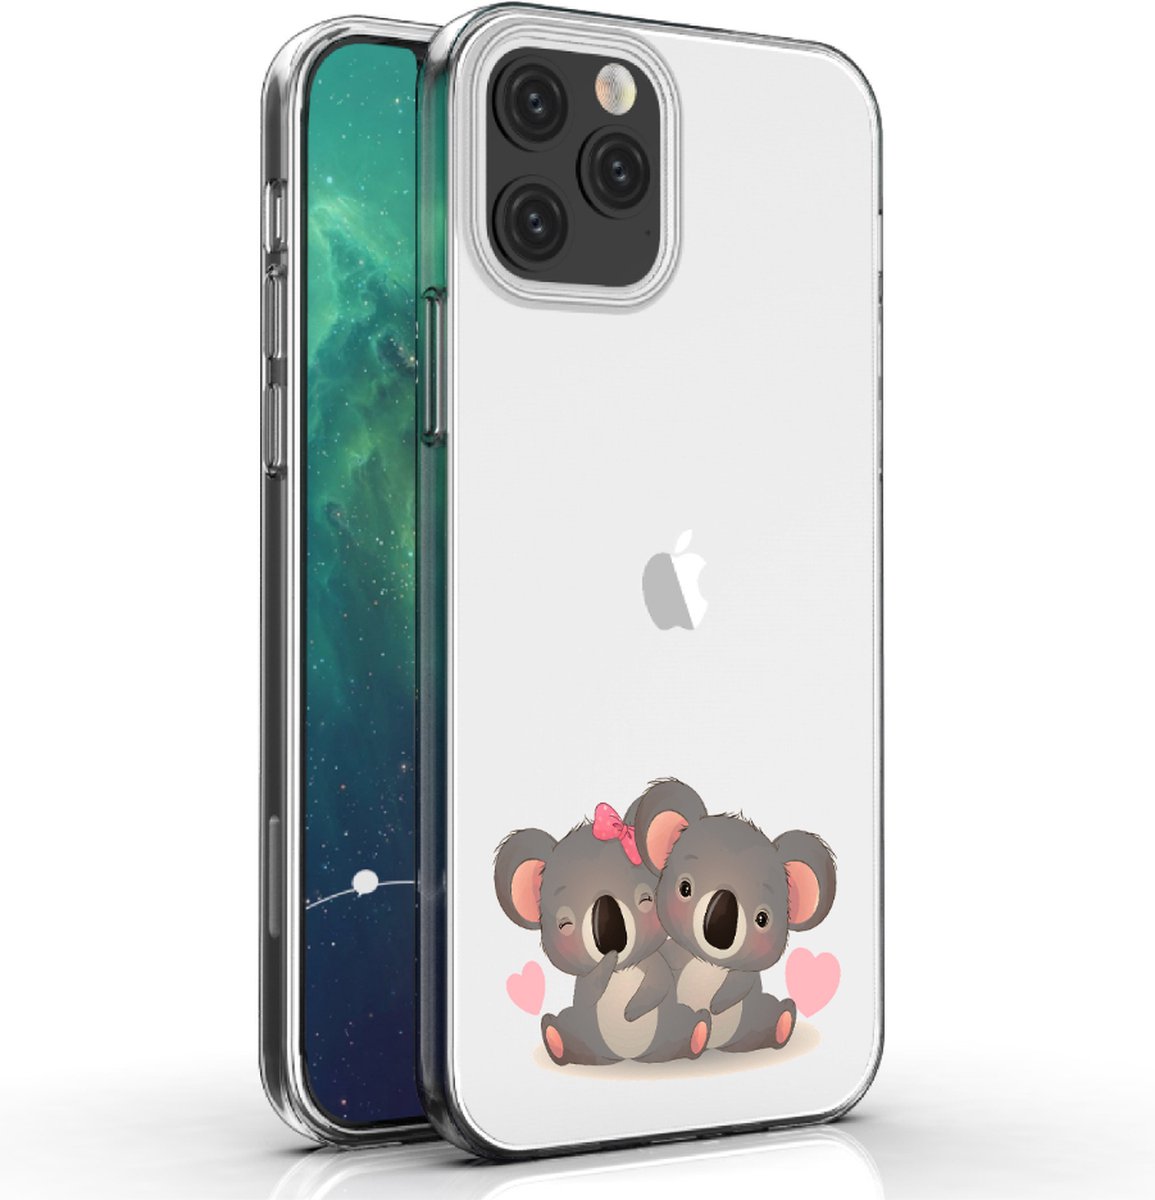 Apple Iphone 12 Pro telefoonhoesje transparant siliconen hoesje - Koalabeertjes